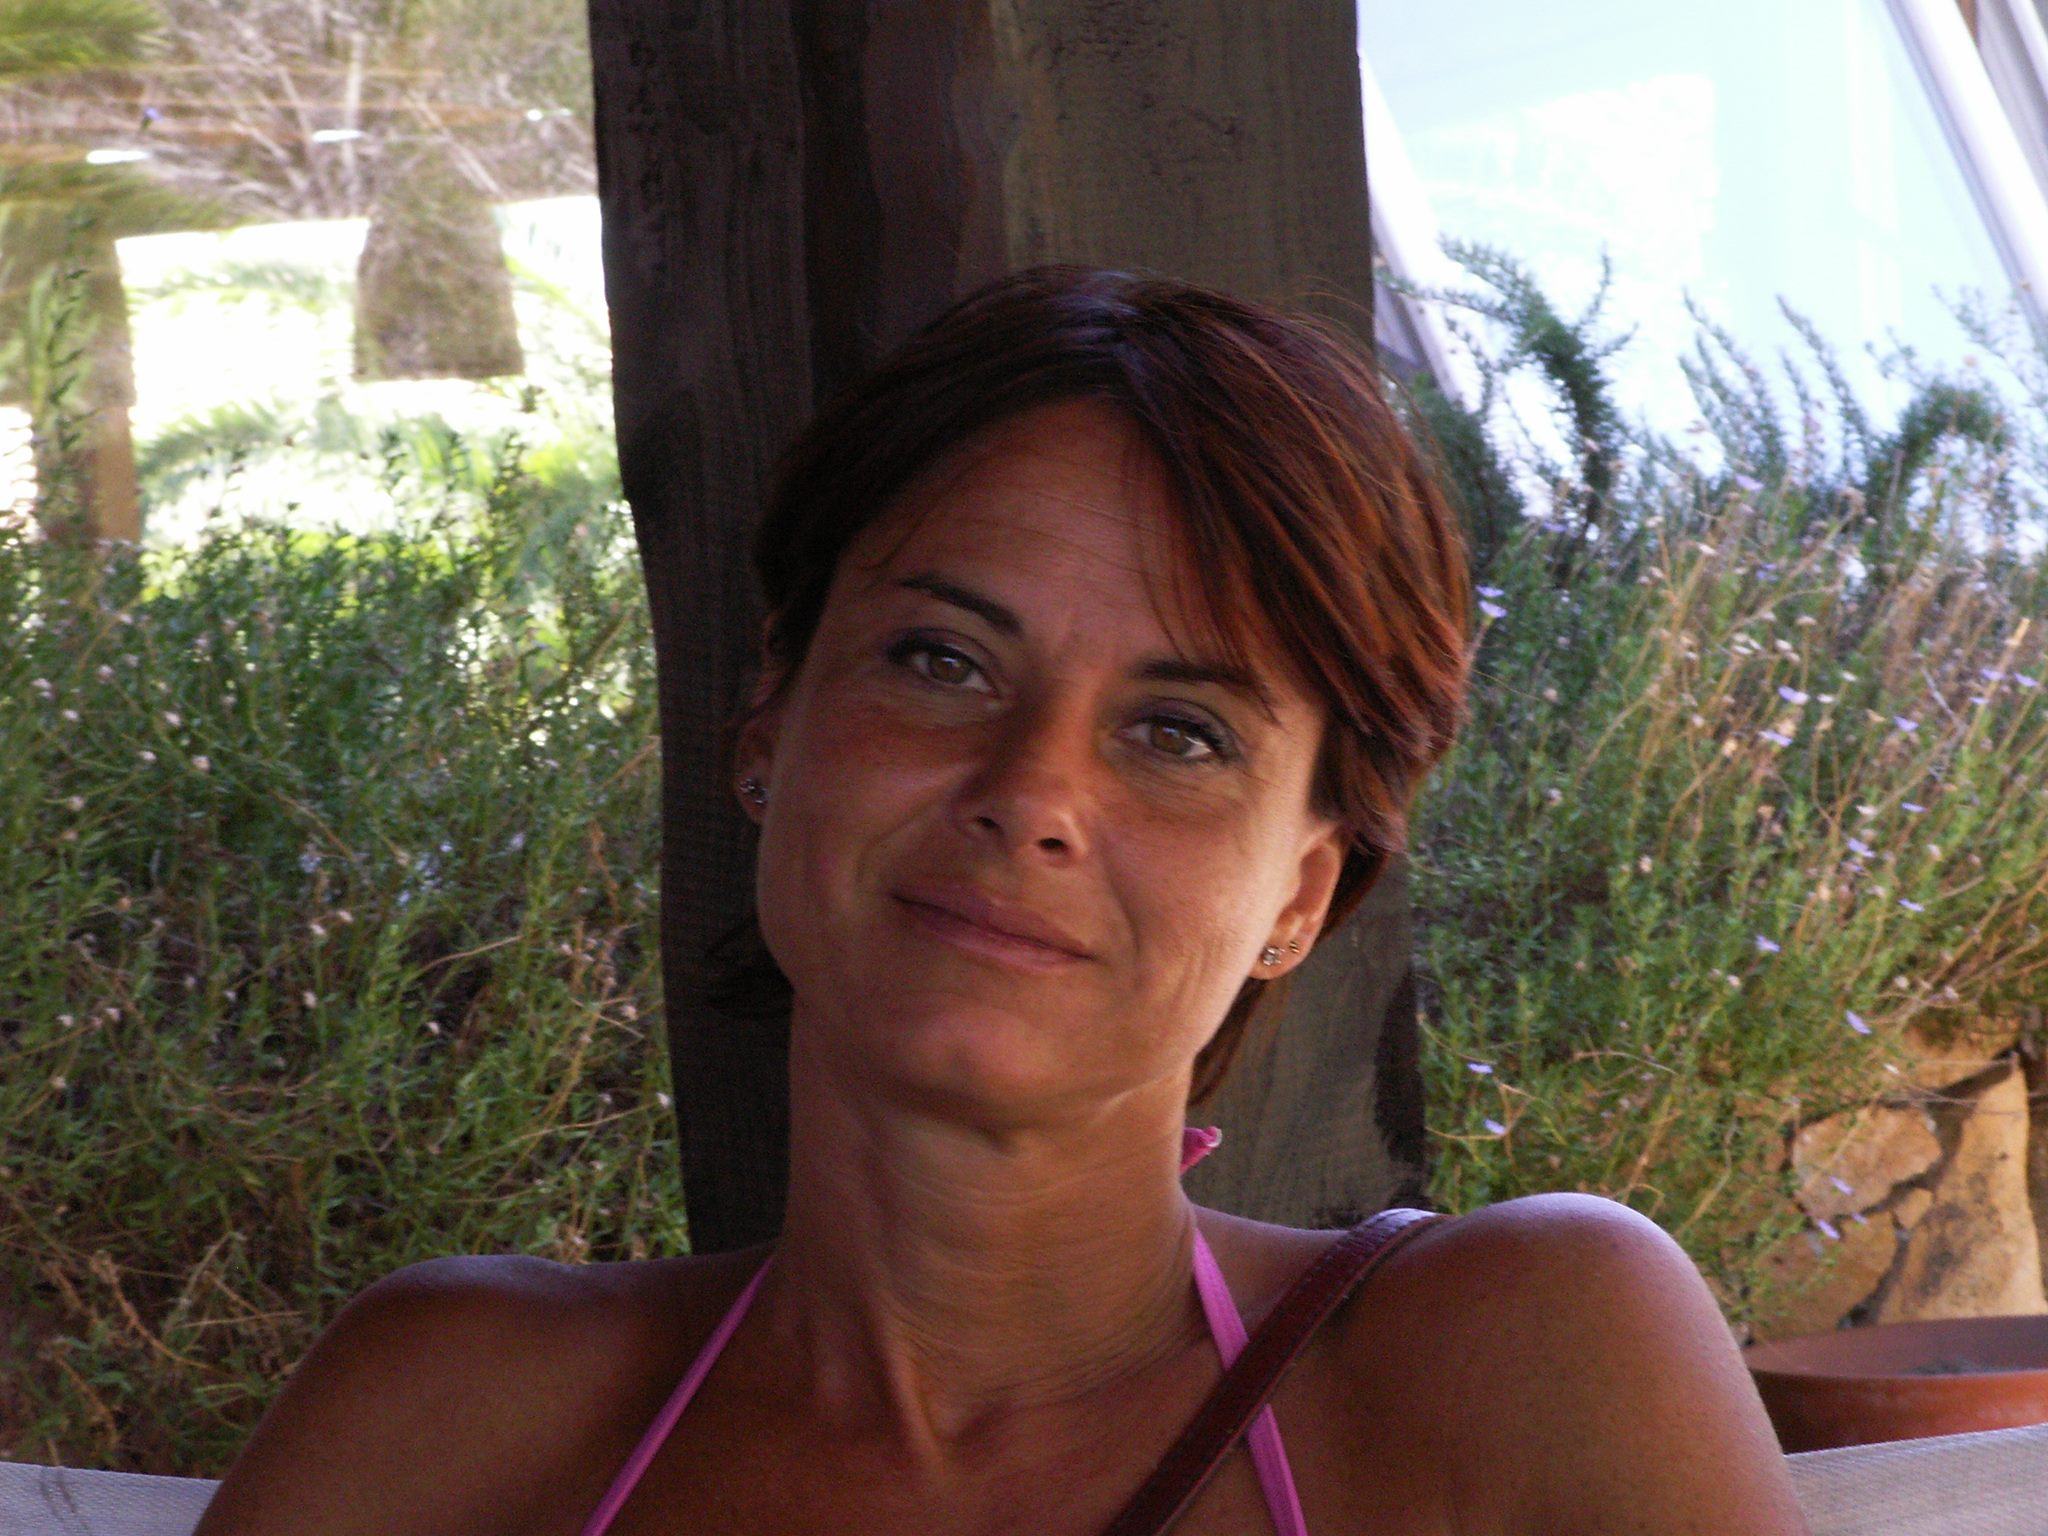 La tragica morte dell'avvocata Isabella Settanni a Villetta Barrea solleva interrogativi e indagini in corso sulla presenza di nitrito di sodio nell'abitazione.